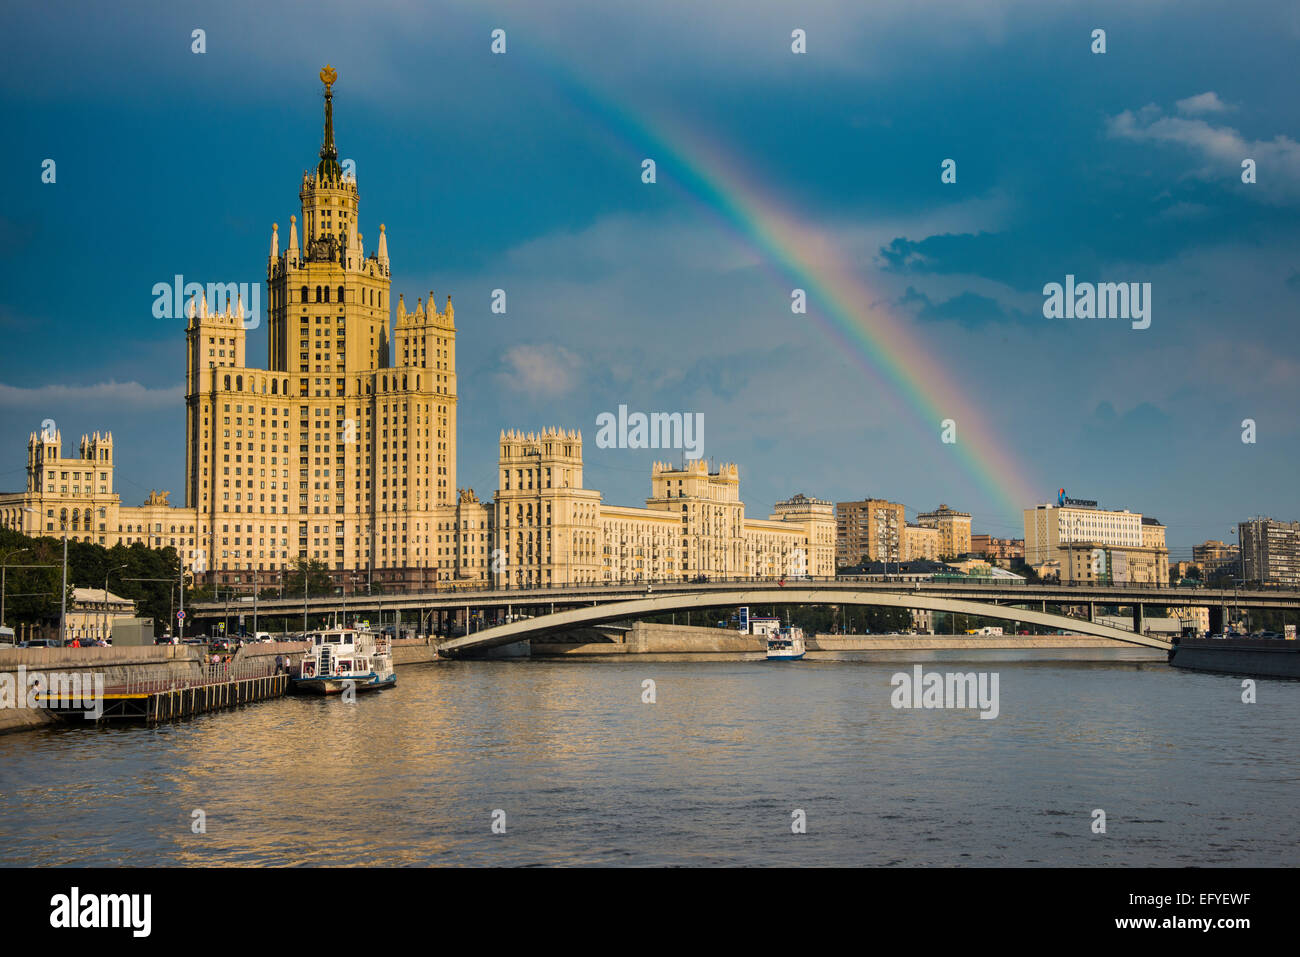 Stalin con una torre rainbow, fiume Moskva, Mosca, Russia Foto Stock